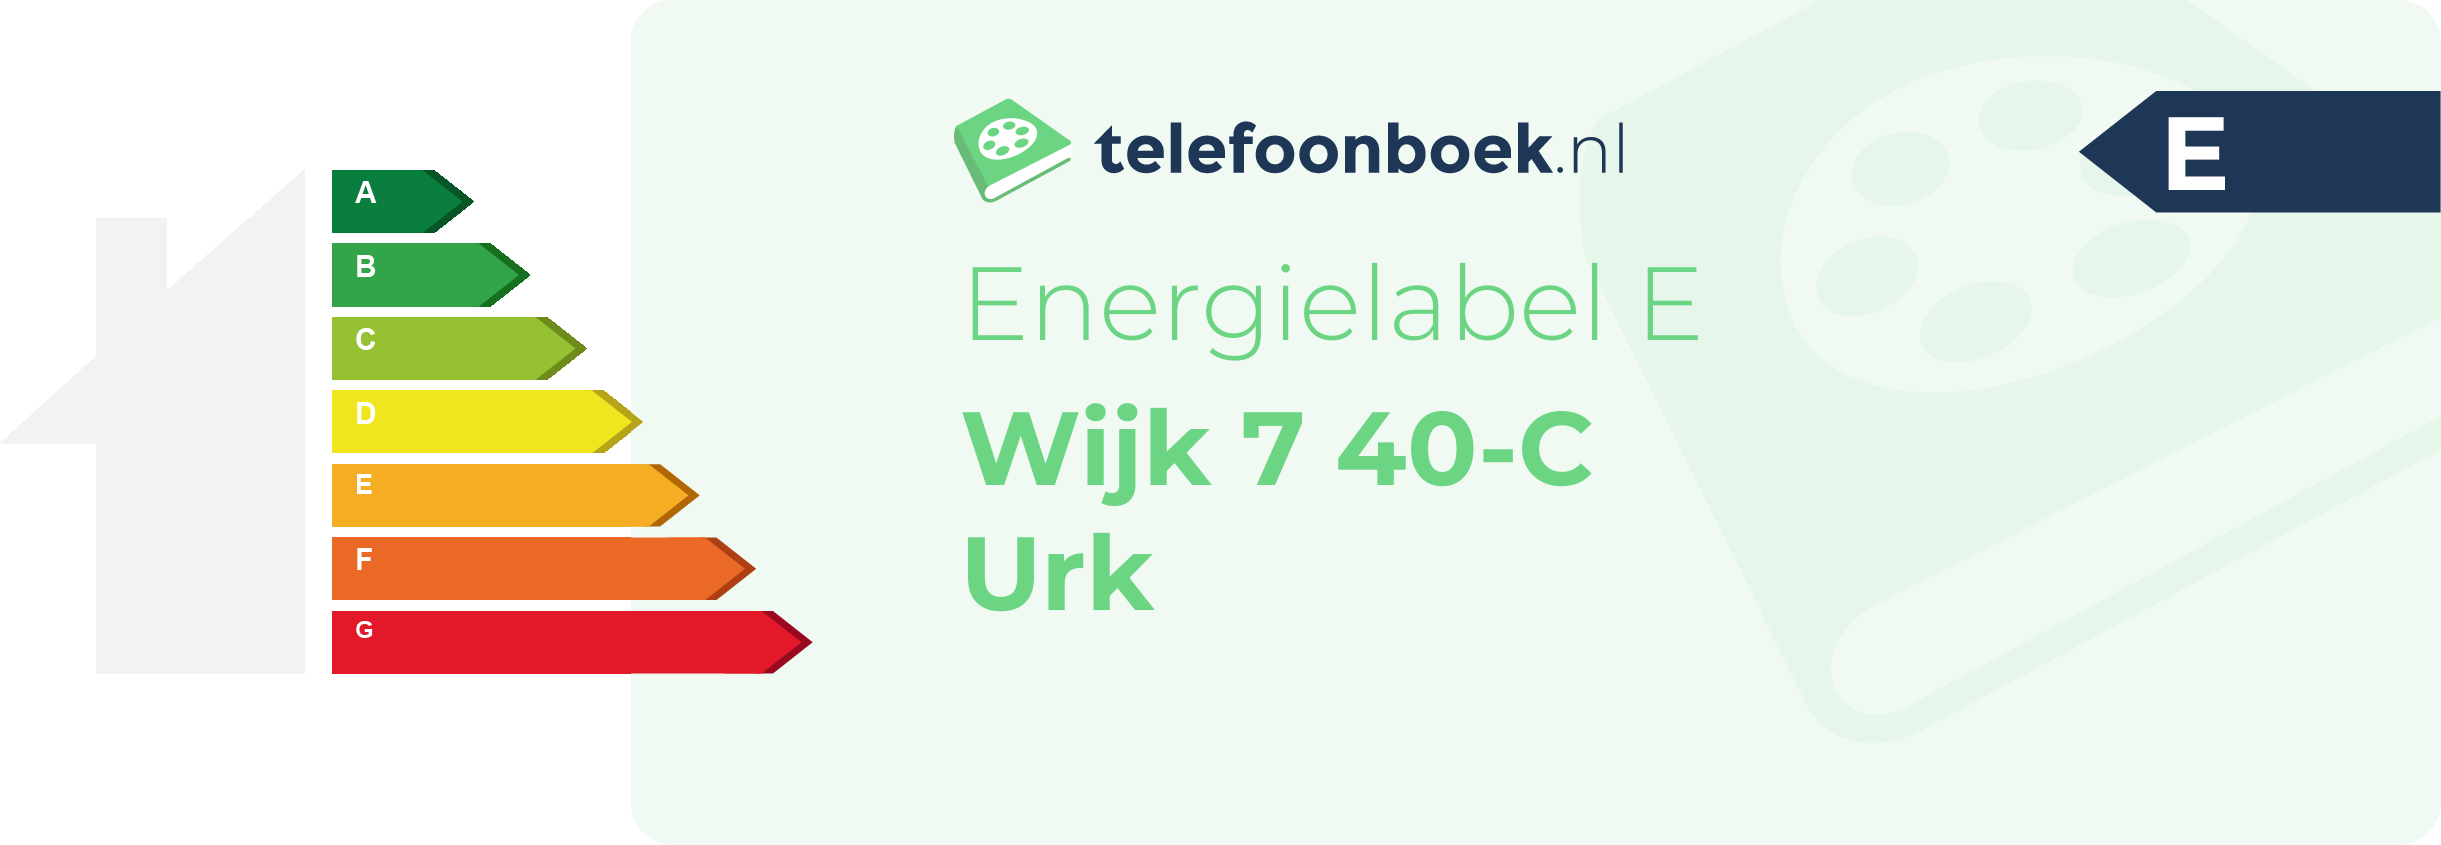 Energielabel Wijk 7 40-C Urk